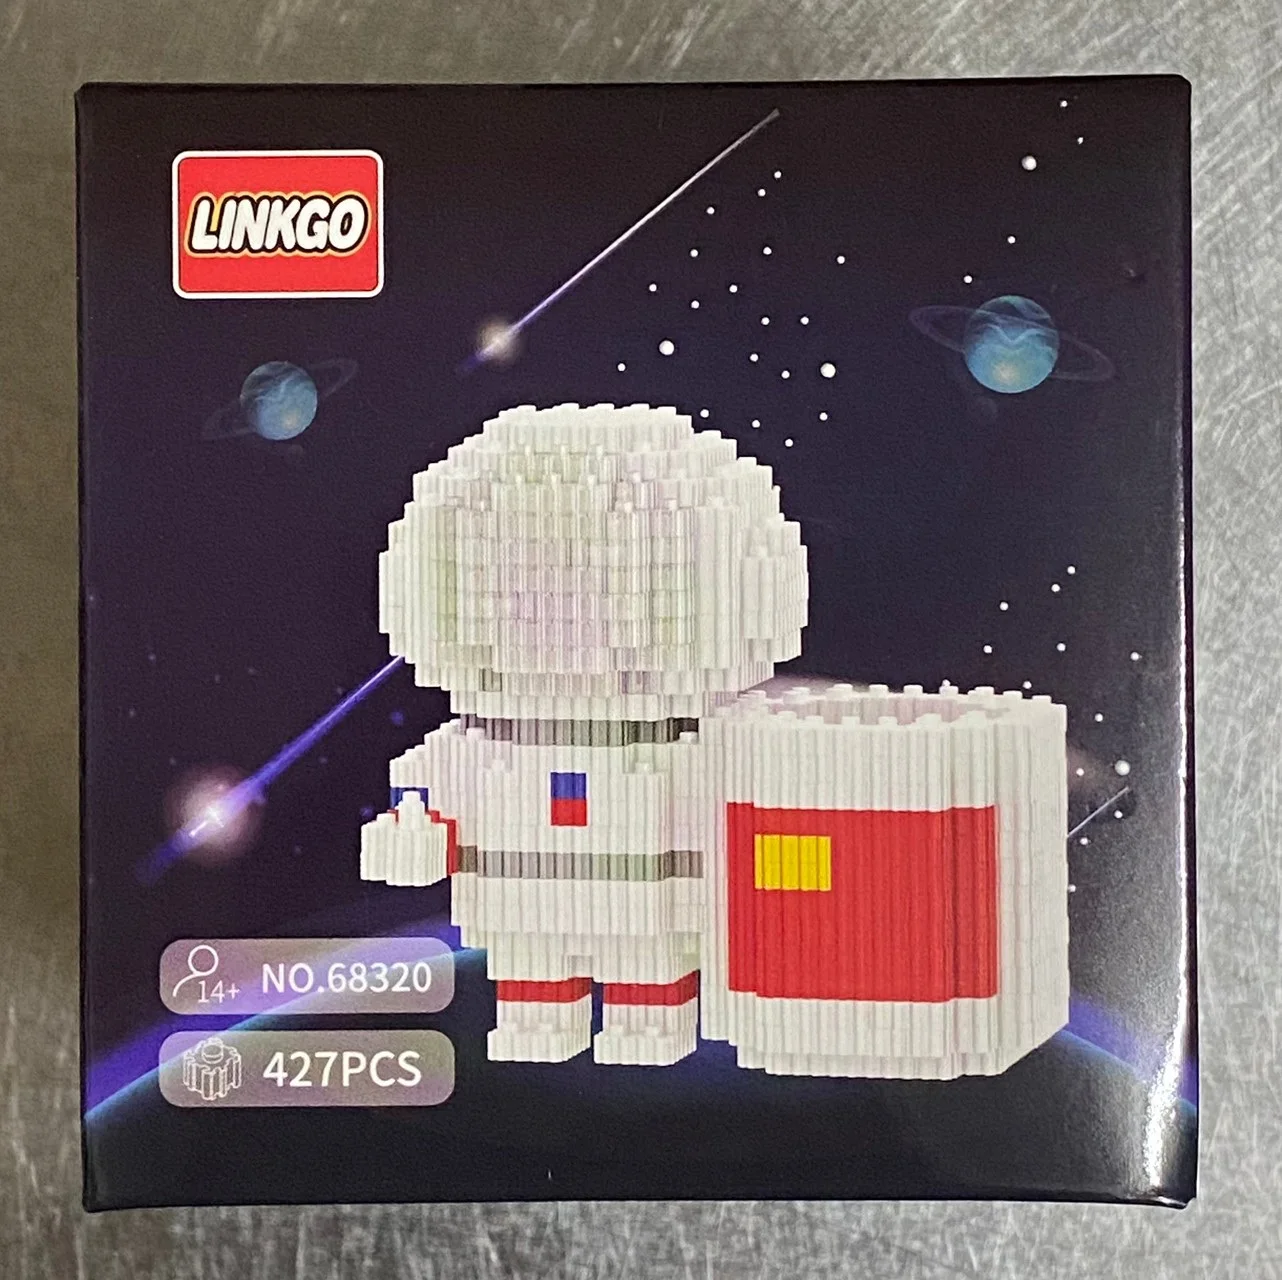 เลโก้นาโนแบบเฟืองไซส์ L - Linkgo 68317-68320 Astronaut ชุดนักบินอวกาศ (2)